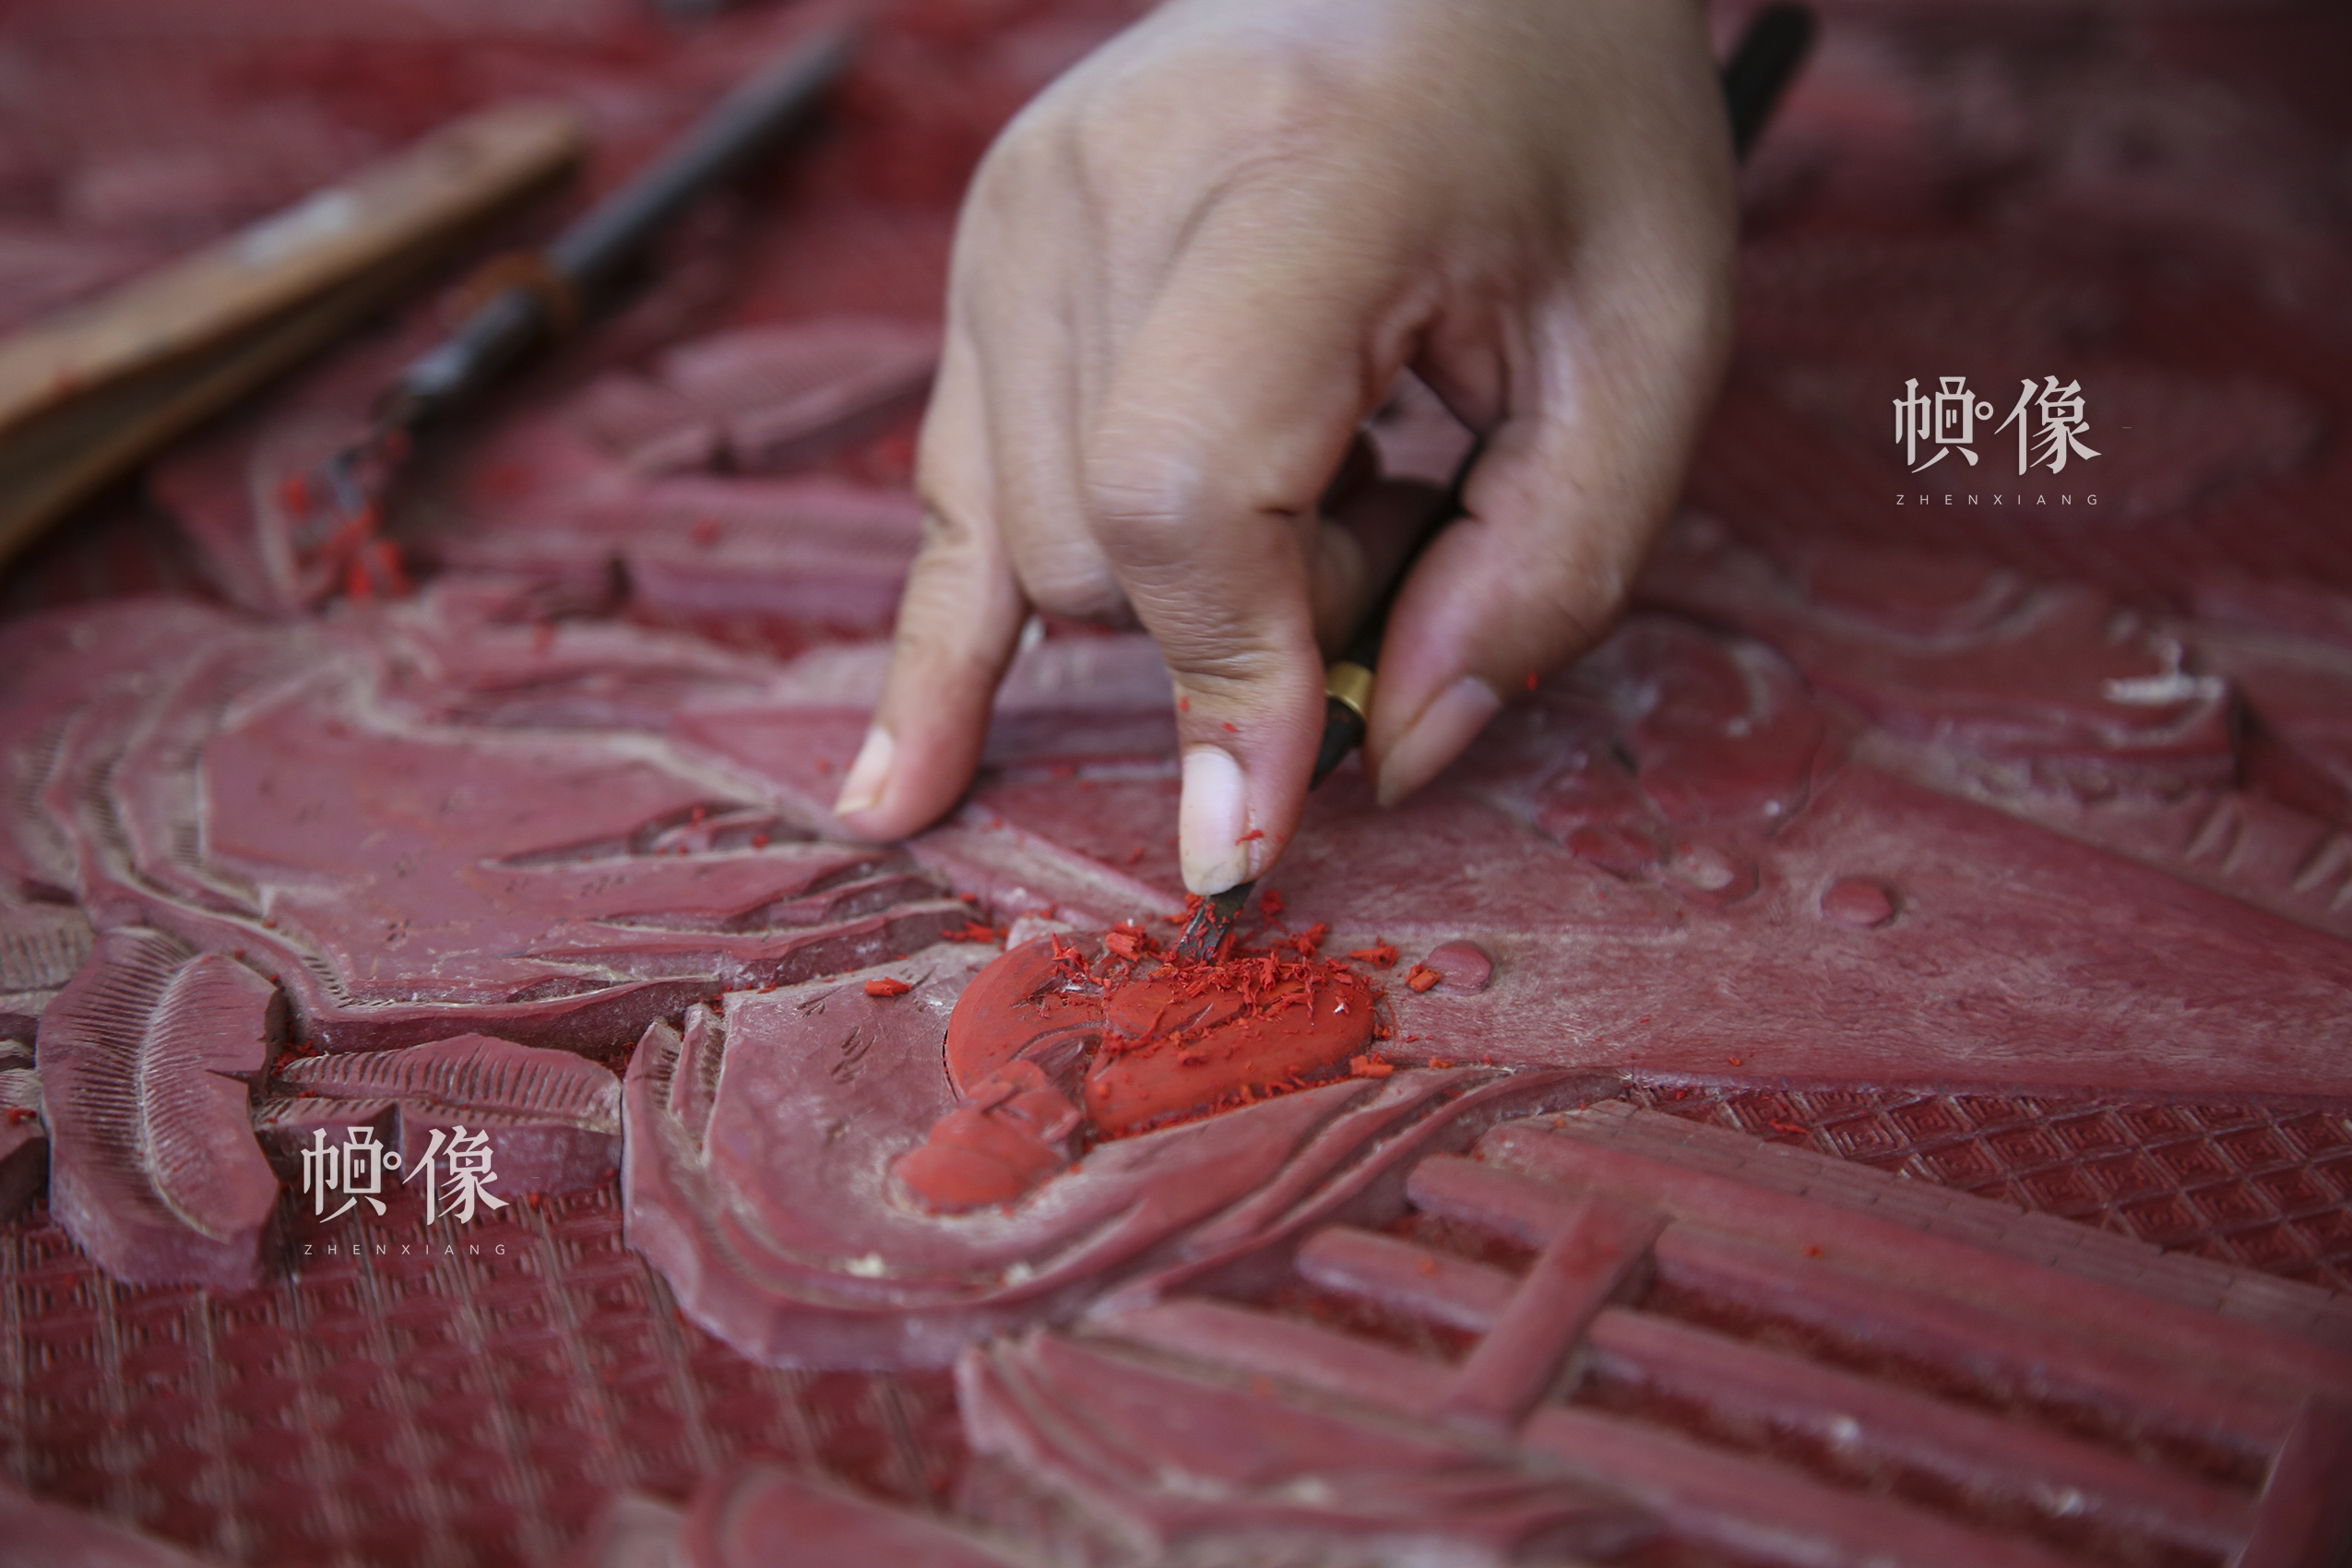 2017年9月20日，“明古斋”雕漆工厂车间，工作人员制作雕漆作品。 中国网记者 黄富友 摄 